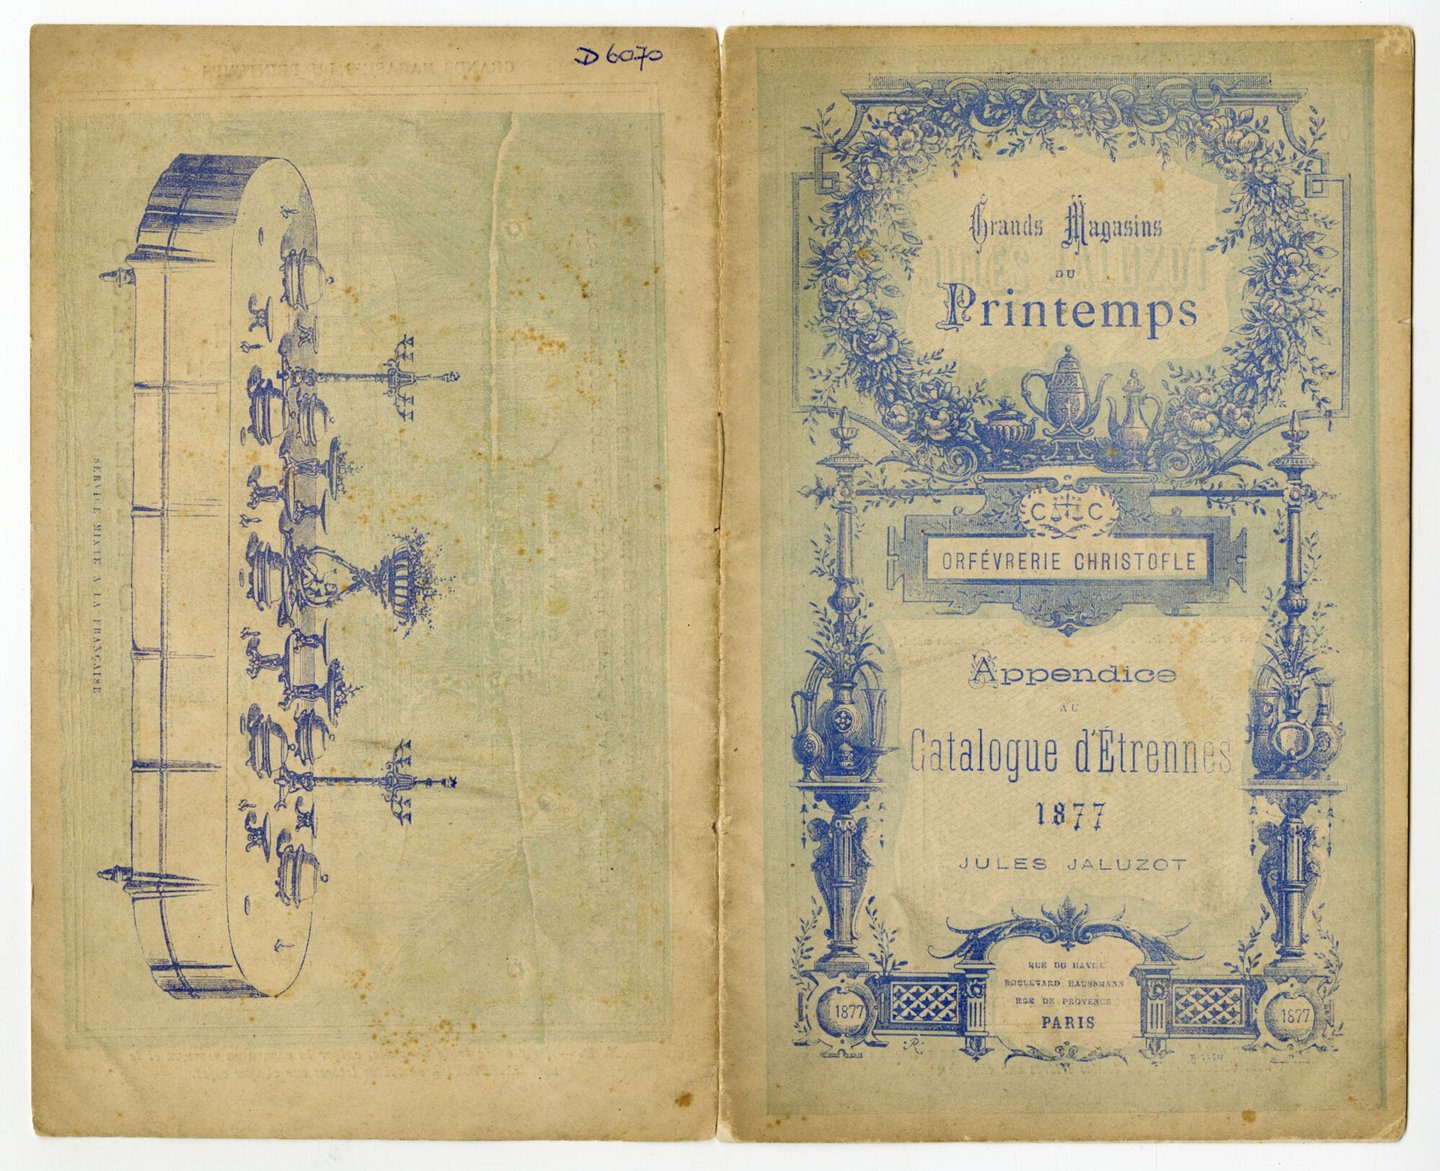 Catalogus met zilverwerk te koop bij Grands Magasins du Printemps